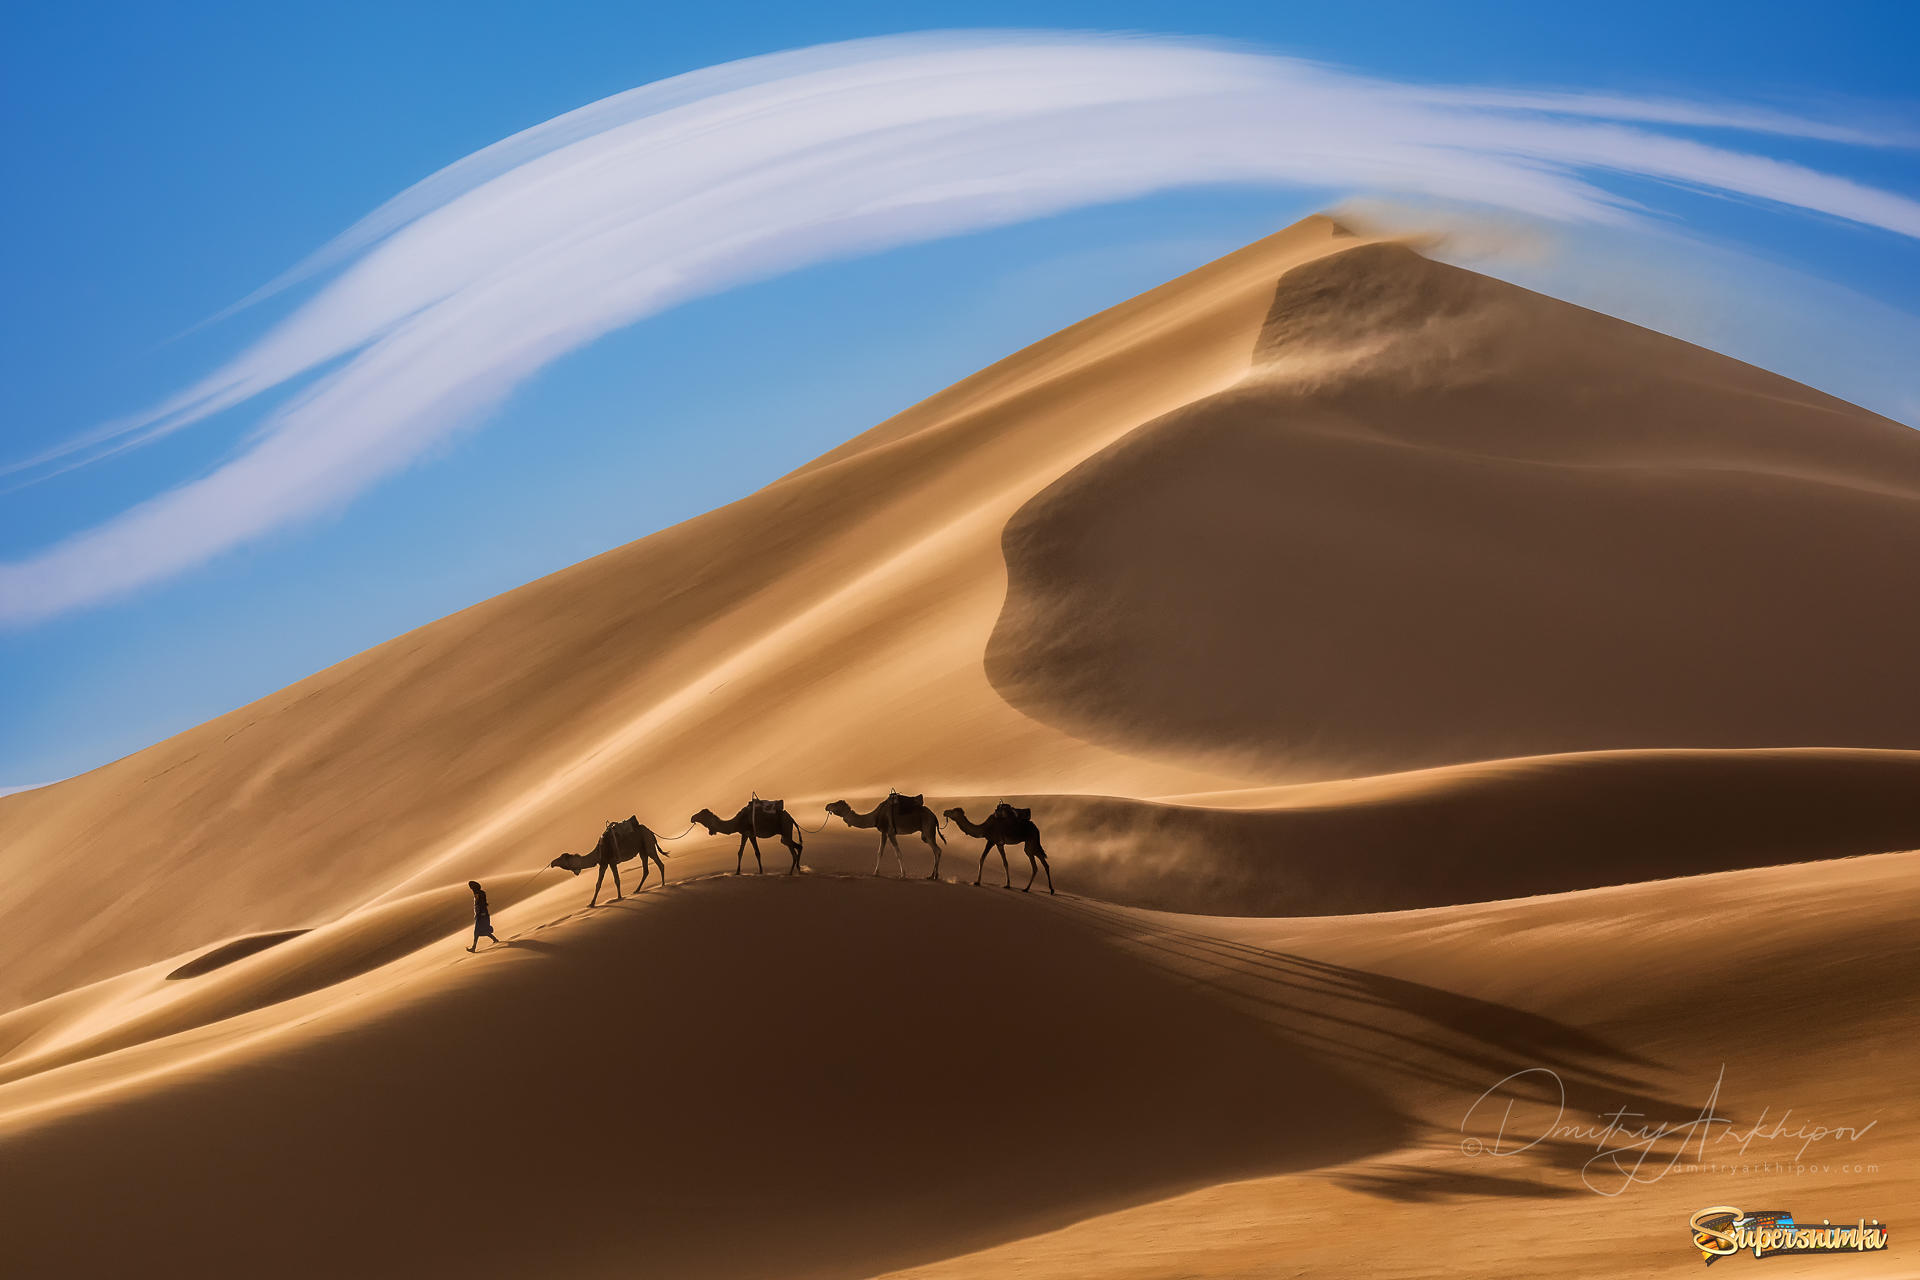 Далекий караван. Фототур в Марокко. Пейзаж пустыни Кызылкум. Верблюд в пустыне.